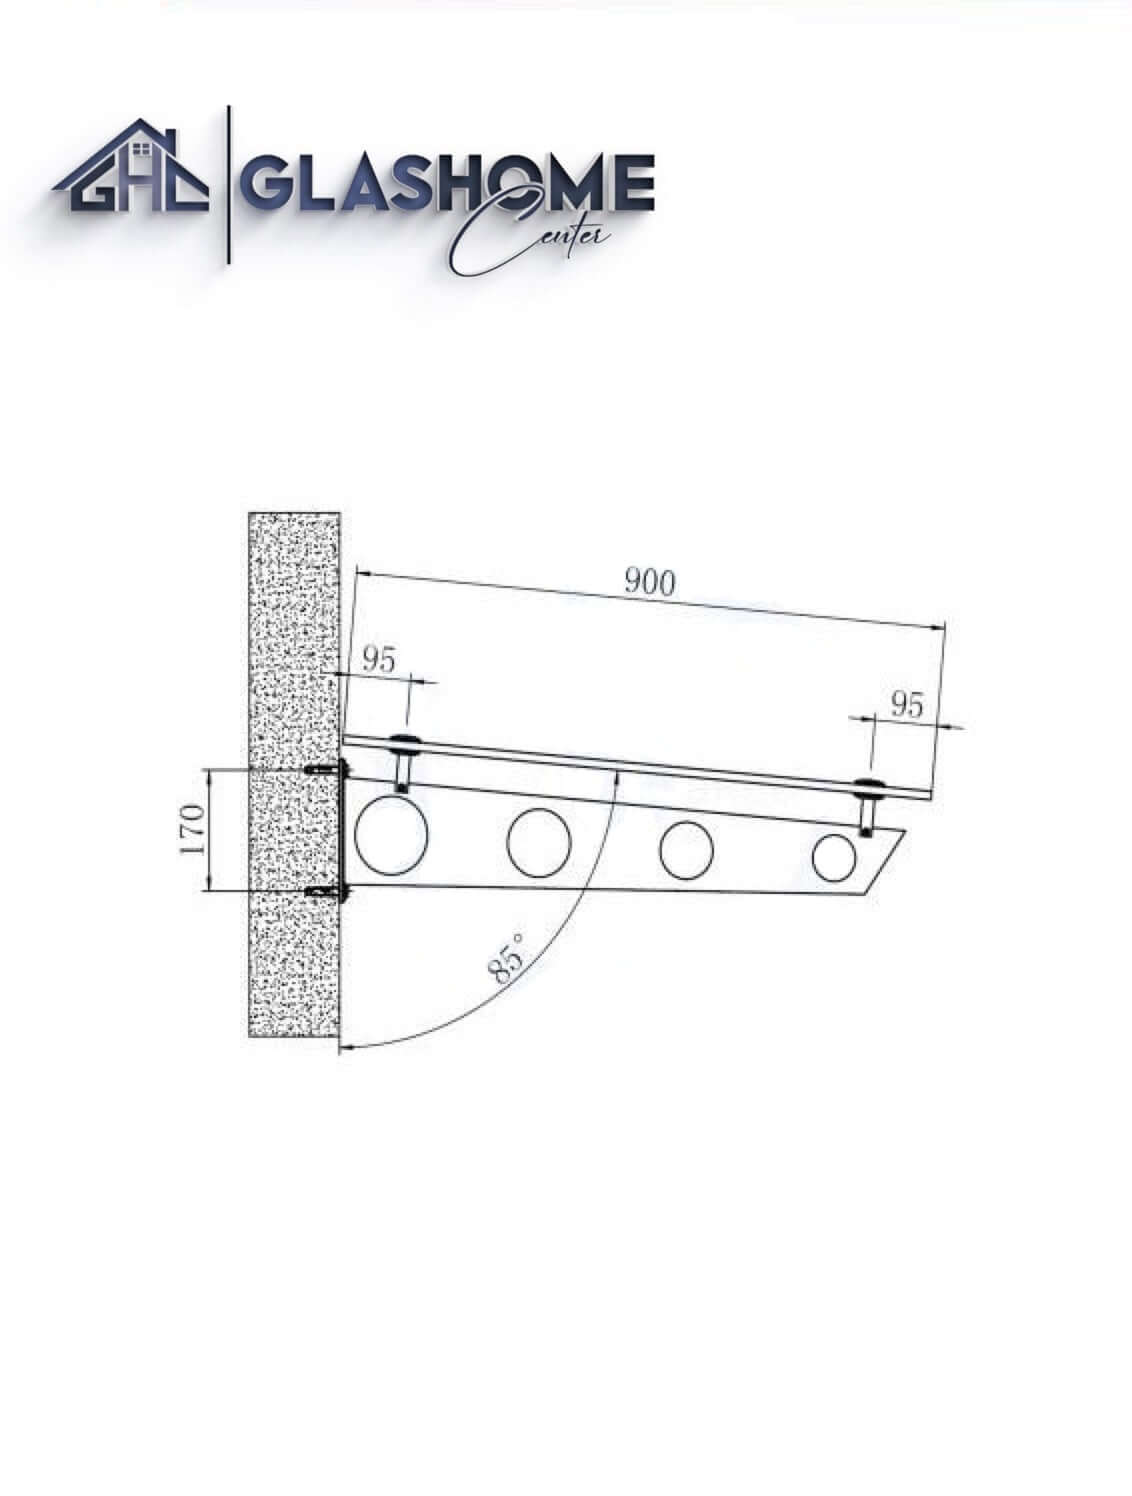 GlasHomeCenter - Glasvordach - Milchglas - 120x90cm - 13,1mm VSG - incl. 2 Edelstahlhalterungen variante "Stoccolma"